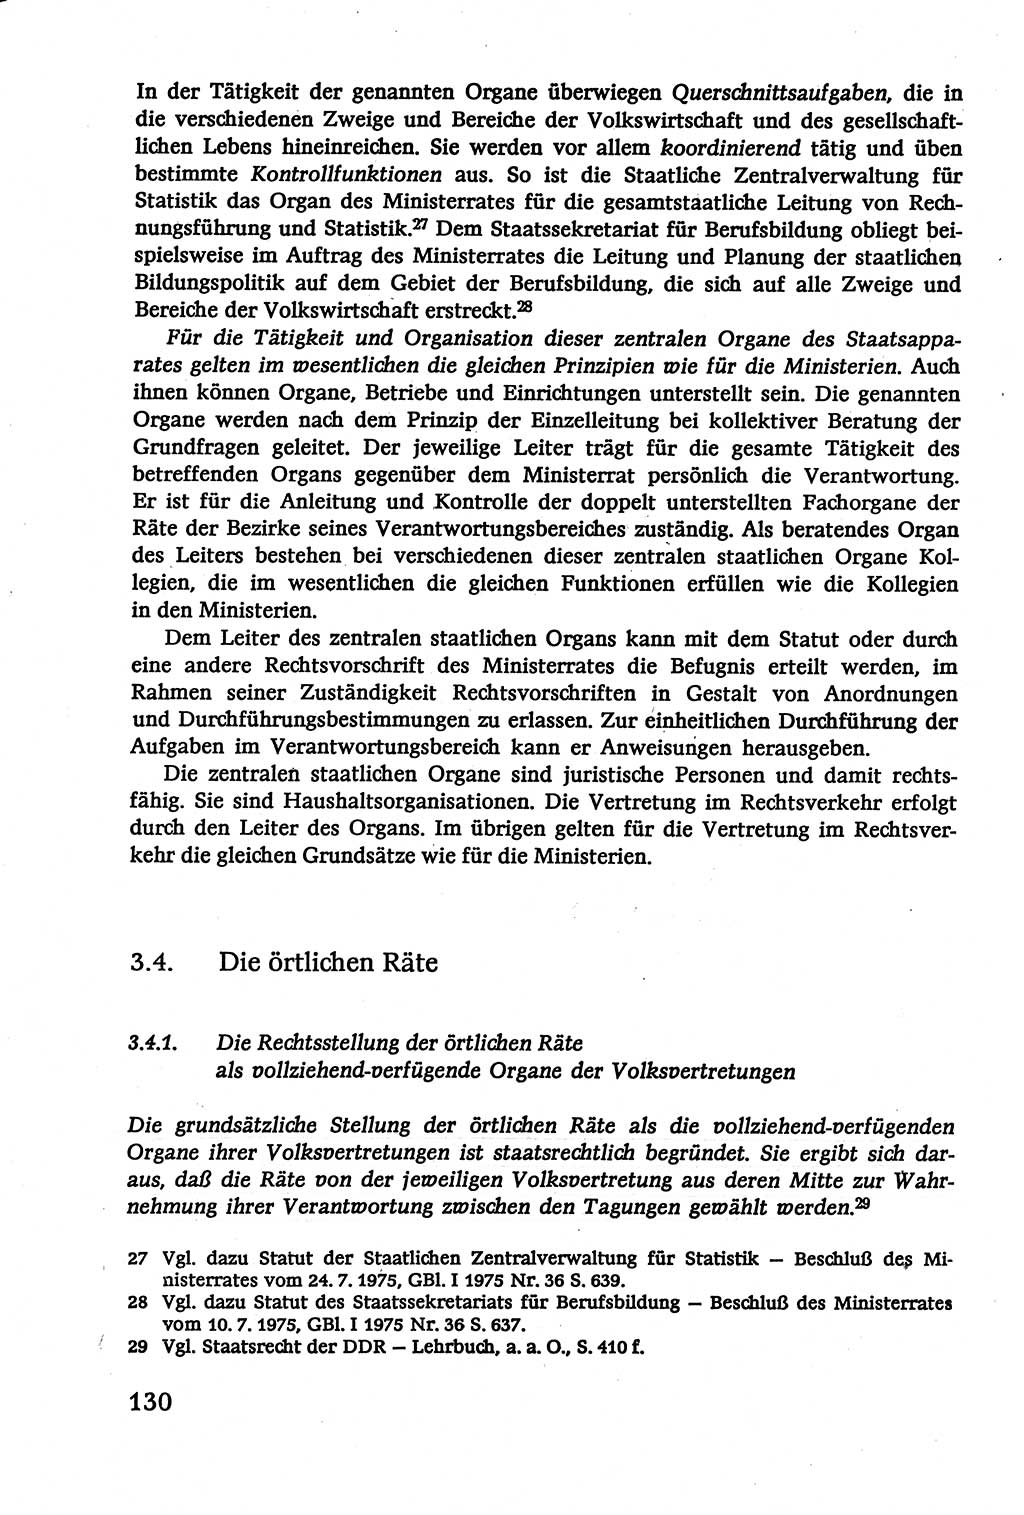 Verwaltungsrecht [Deutsche Demokratische Republik (DDR)], Lehrbuch 1979, Seite 130 (Verw.-R. DDR Lb. 1979, S. 130)